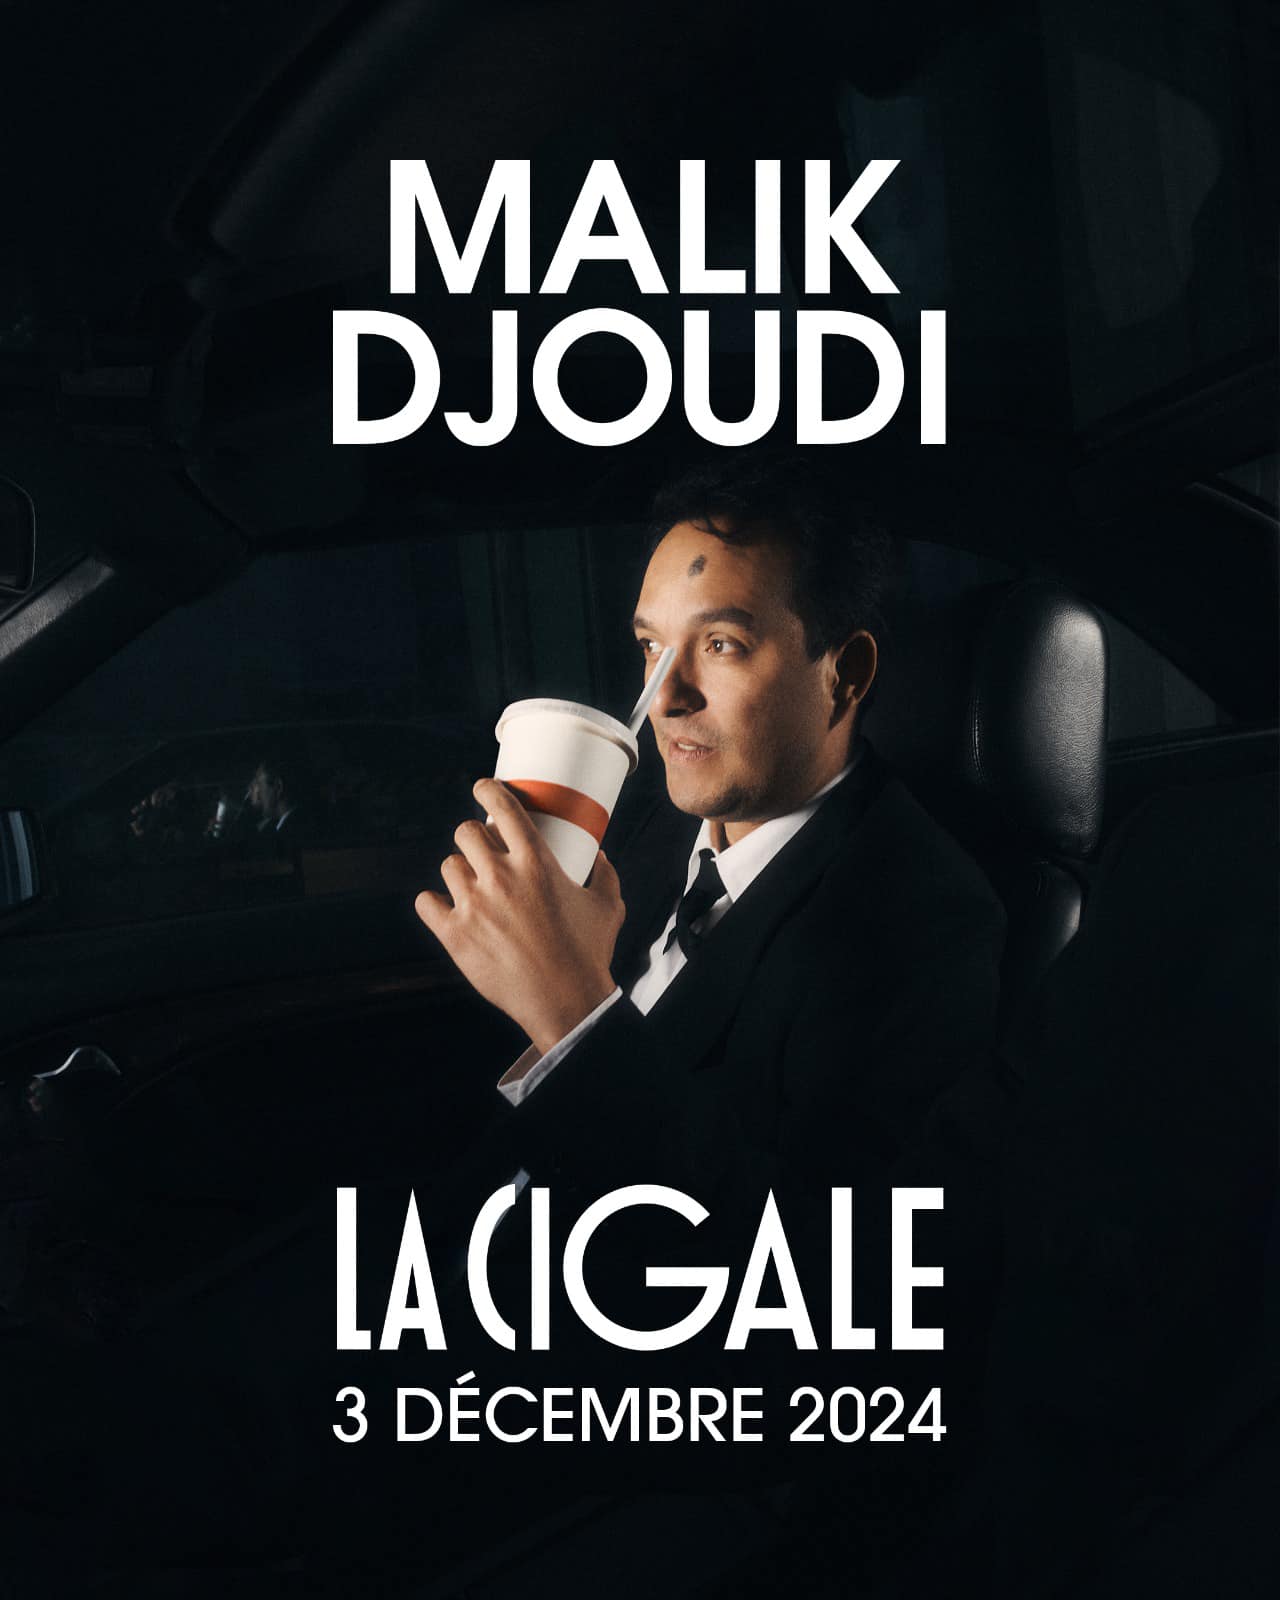 Malik Djoudi at La Cigale Tickets